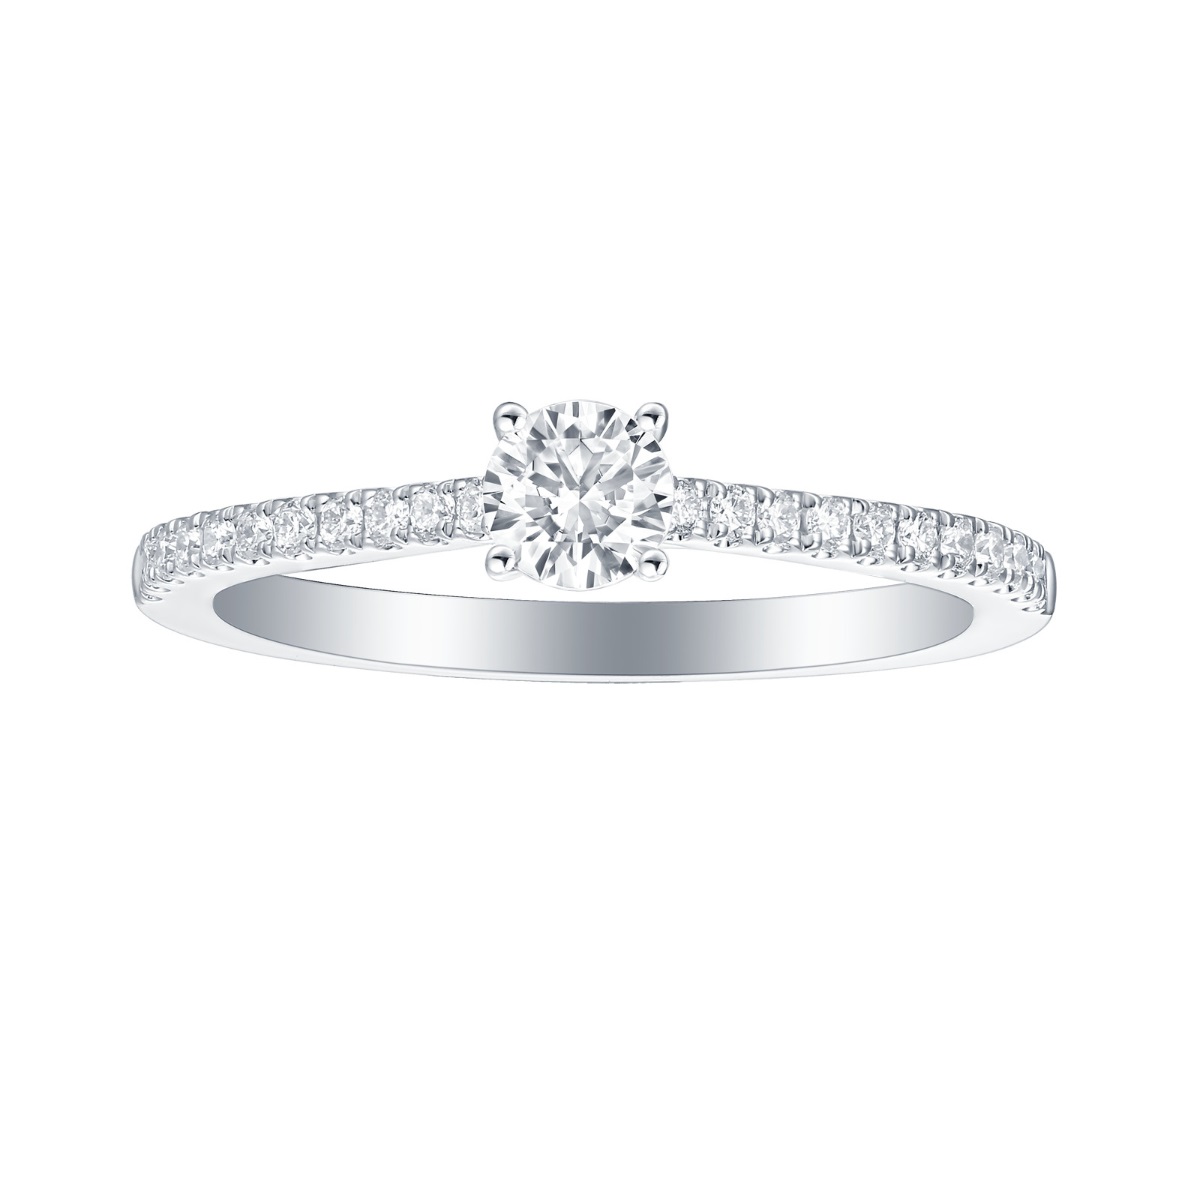 R35878WHT – 18K White Gold Diamond Ring, 0.69 TCW